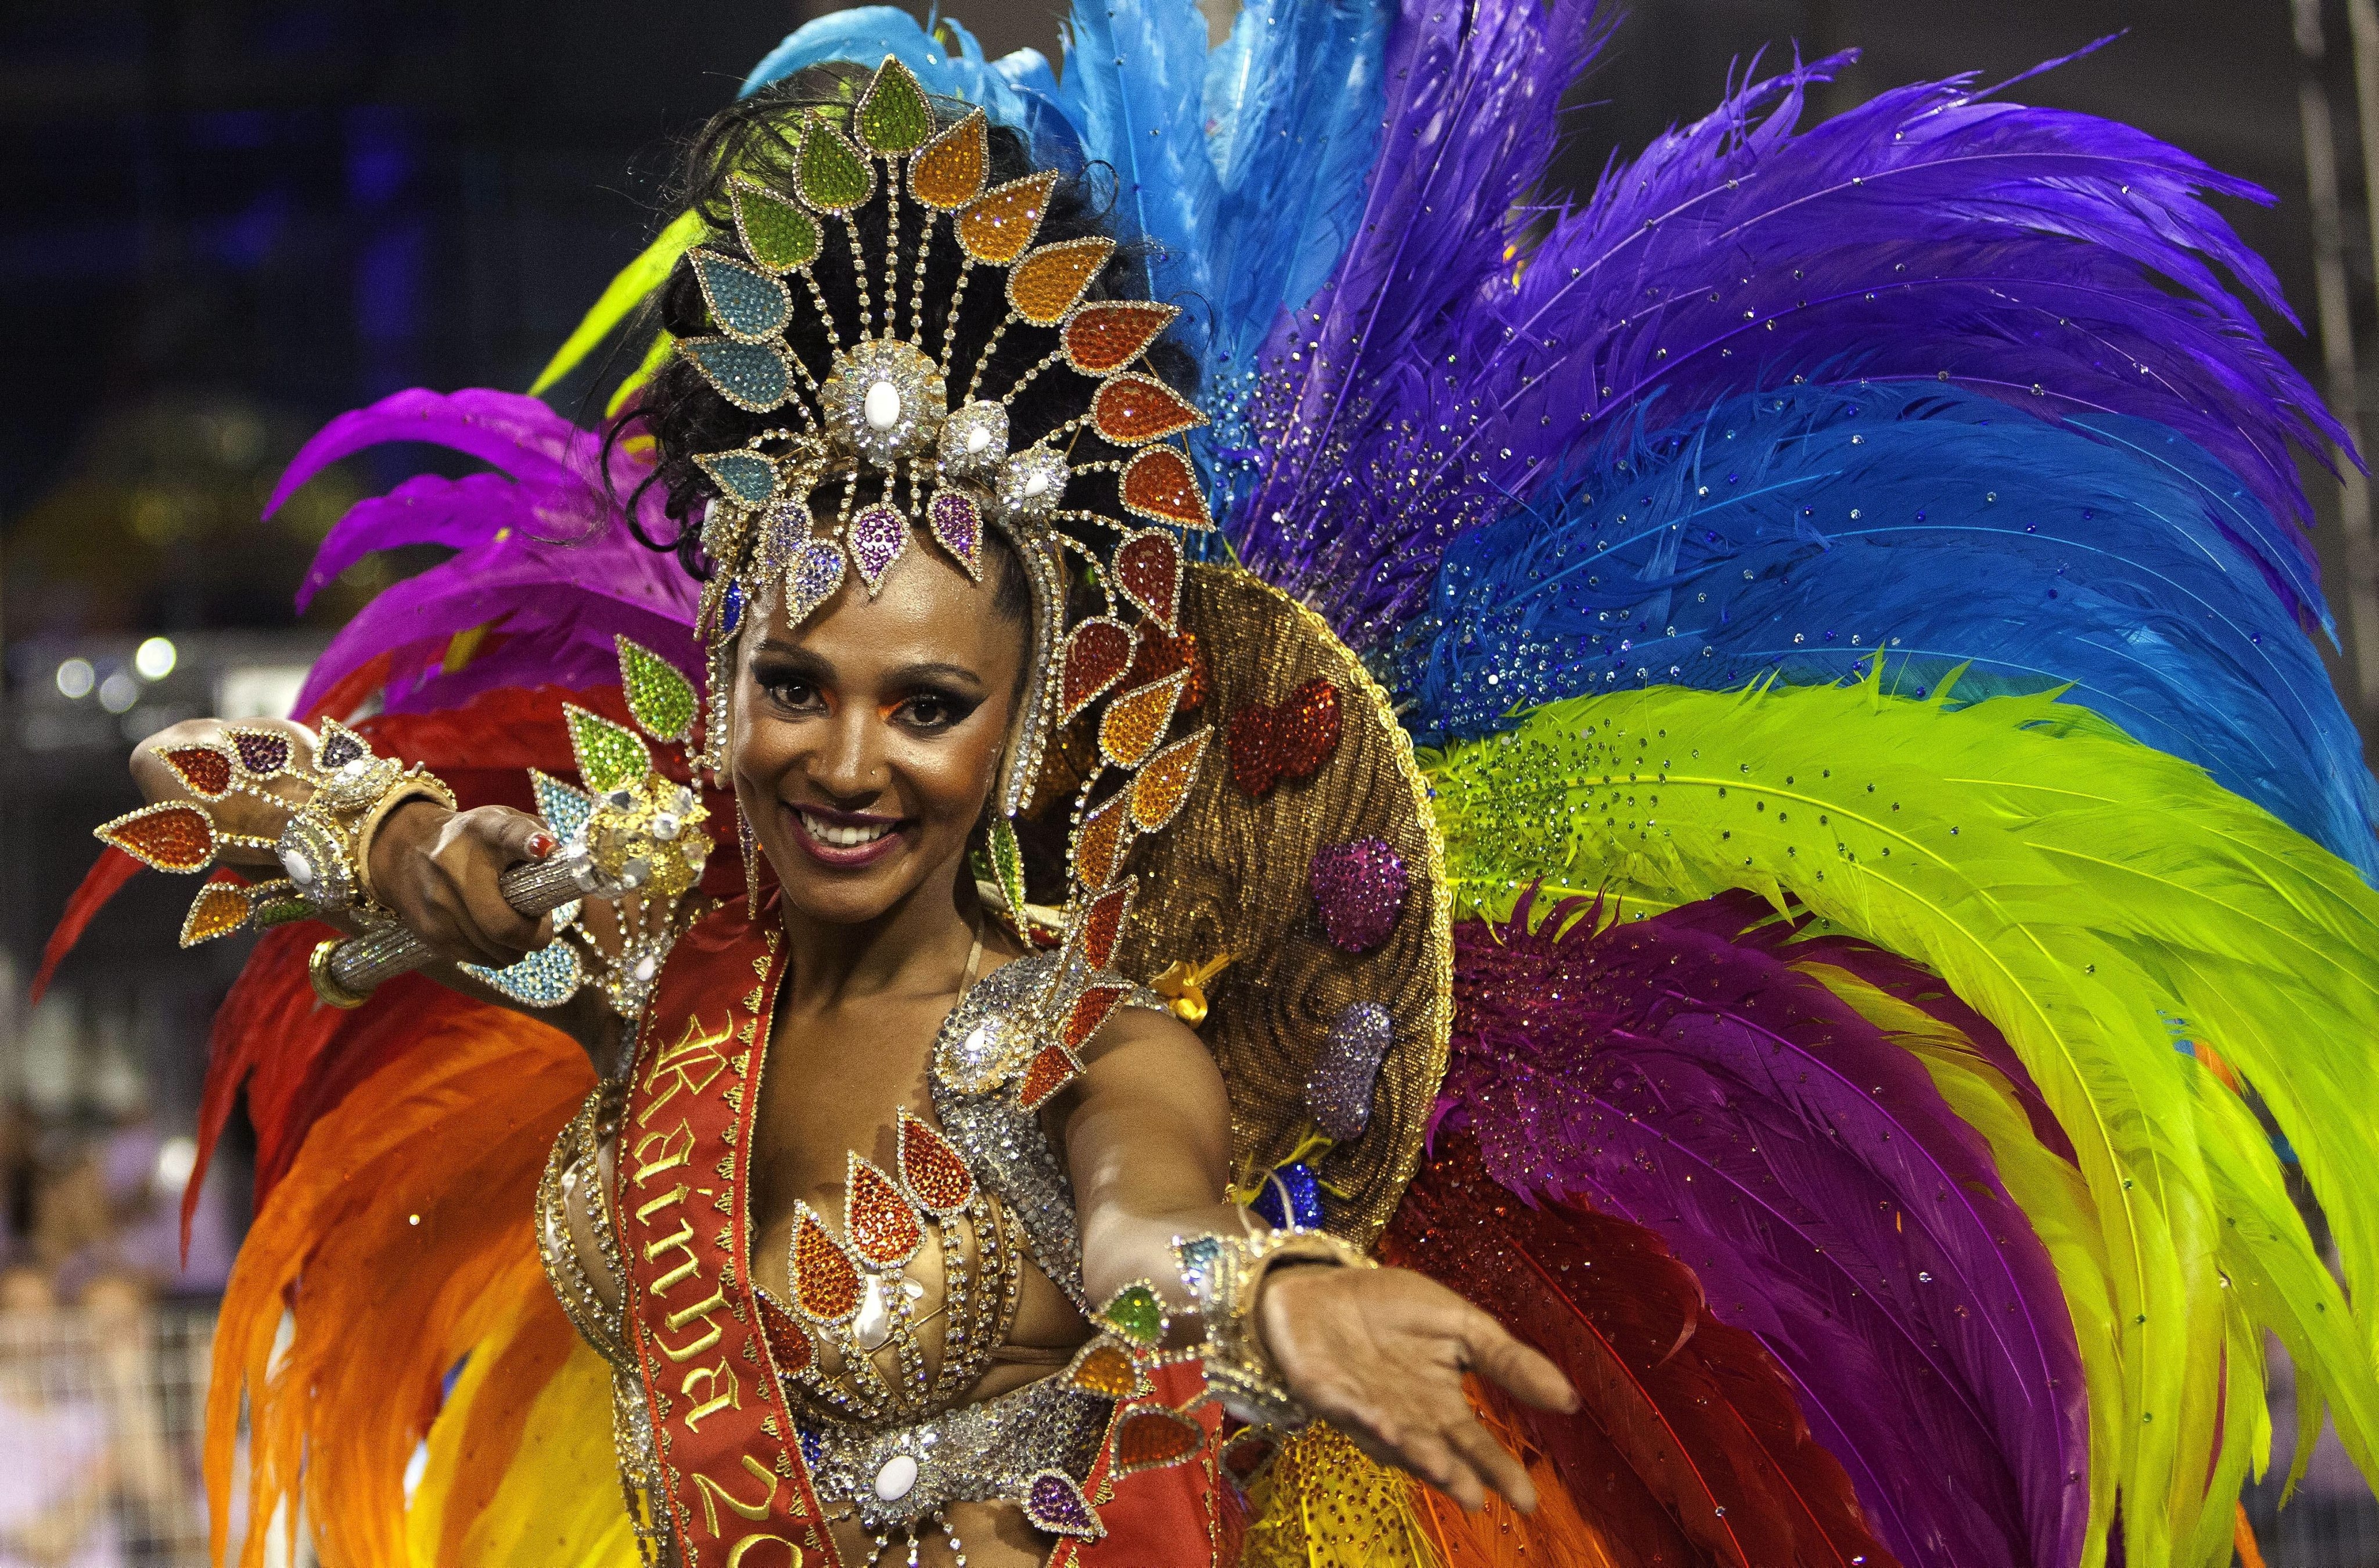 Karnaval. Карнавал в Рио-де-Жанейро. Рио-де-Жанейро карнавал костюмы. Карнавал в Рио-де-Жанейро (бразильский карнавал). Бразилия фестиваль Рио де Жанейро.